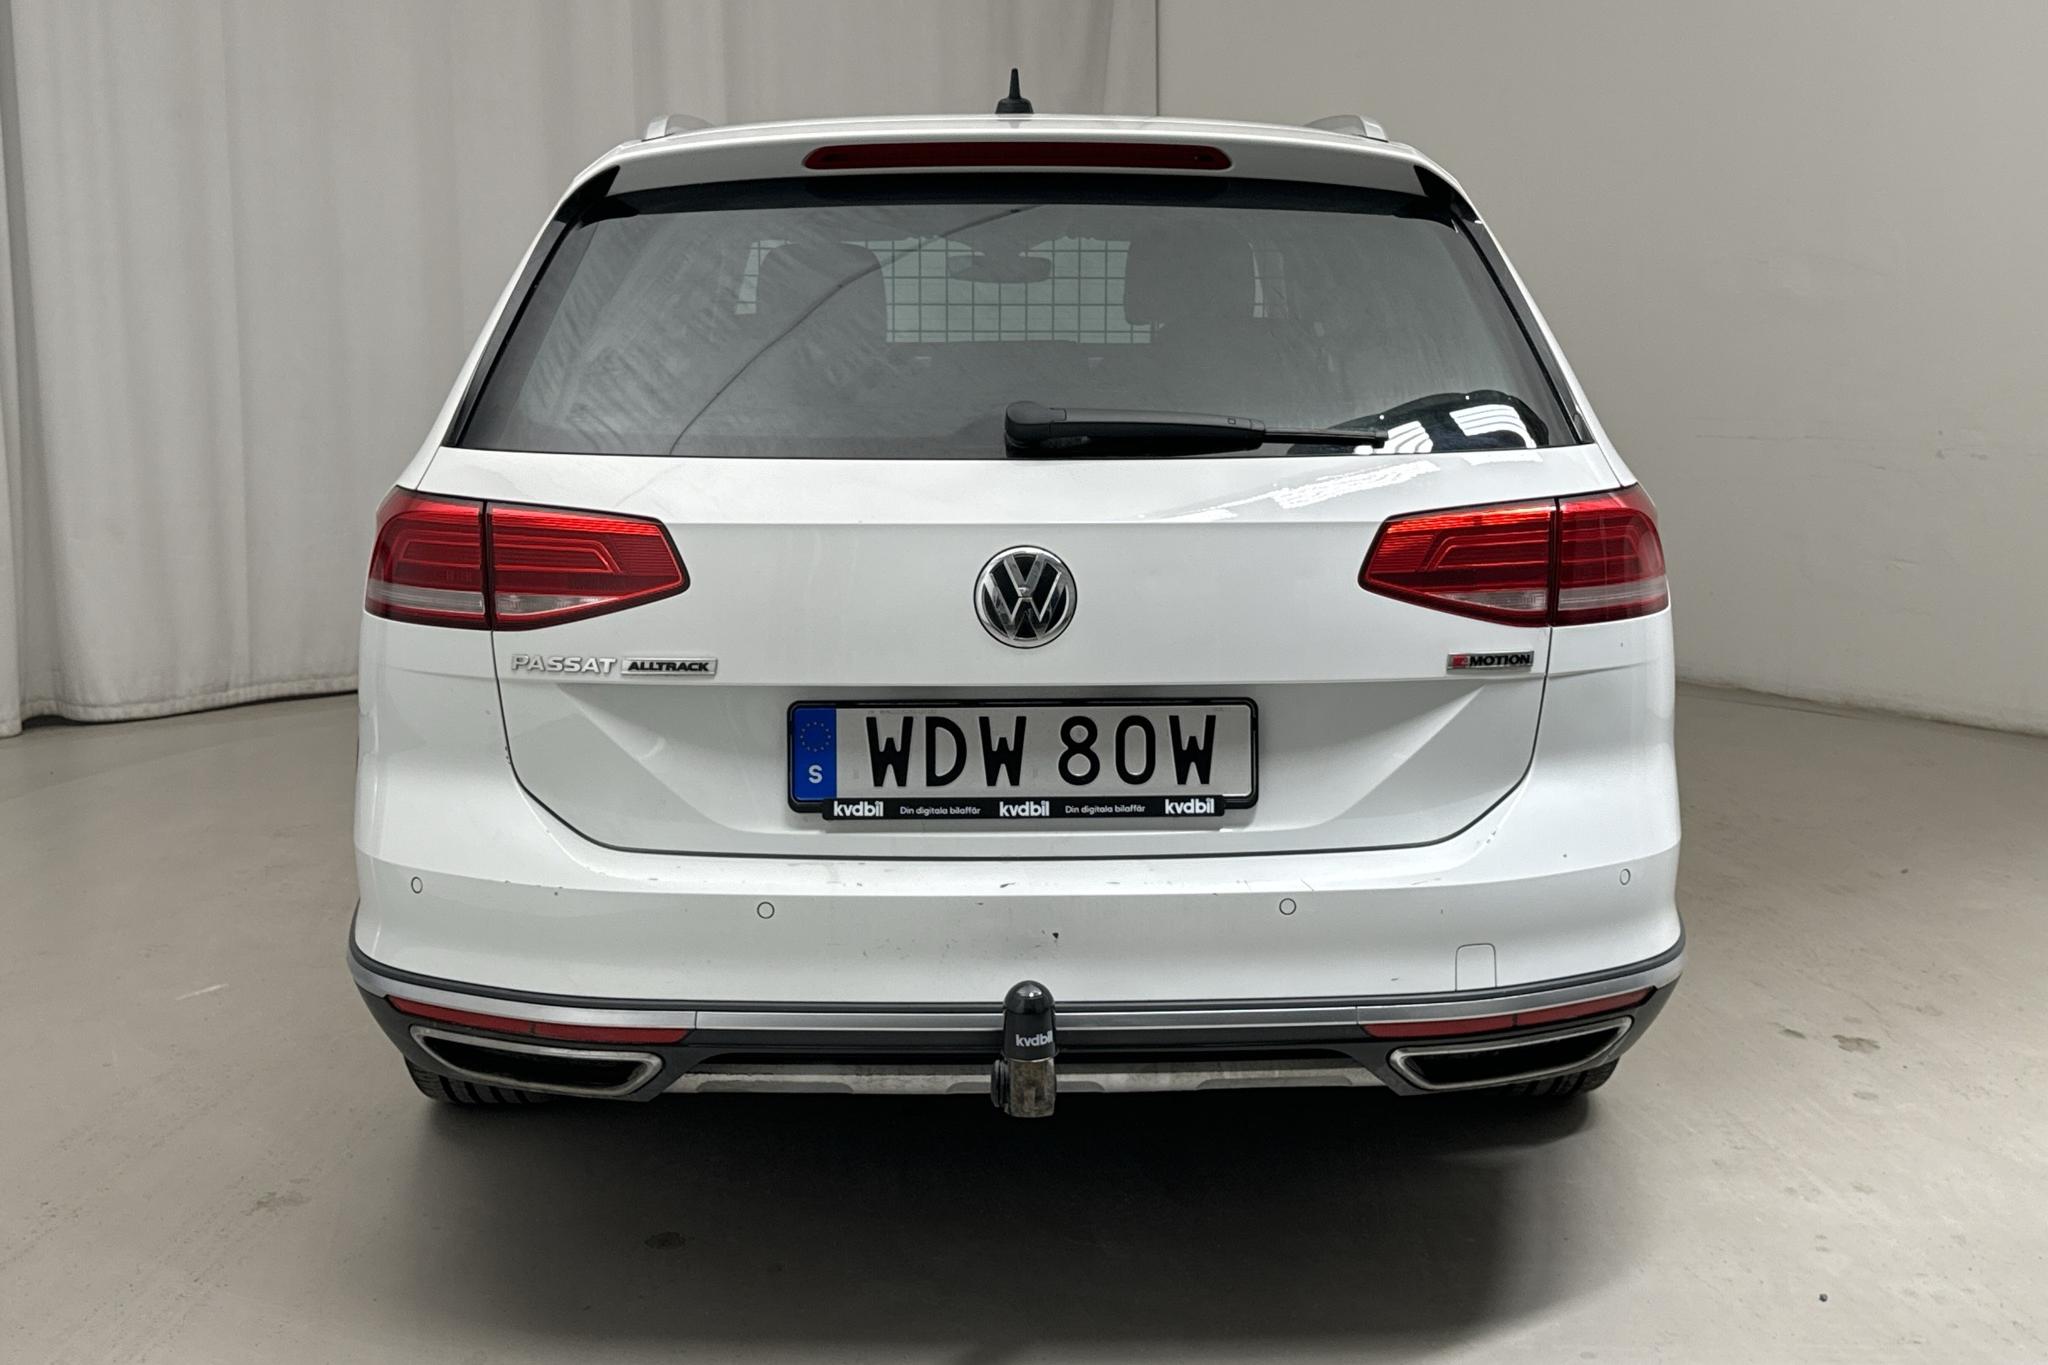 VW Passat Alltrack 2.0 TDI 4MOTION (190hk) - 198 760 km - Automatic - white - 2019